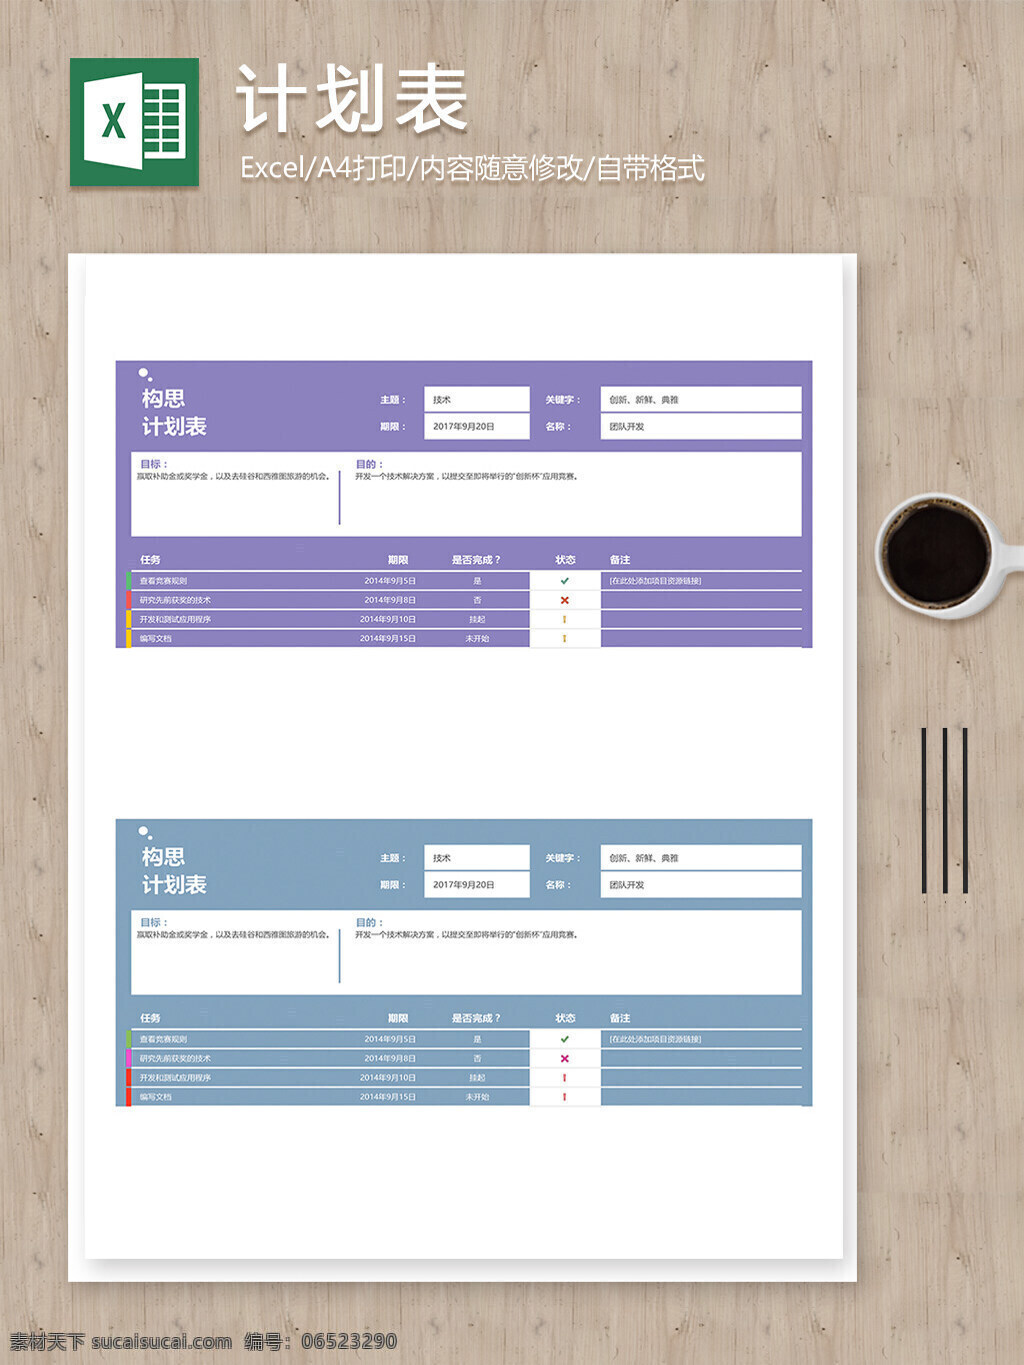 团队 工作 构思 计划 彩色 excel 表格 安排表 报表 表格模板 表格设计 工作计划表 计划表 人力资源 人事报表 人事表格 任务安排表 任务表